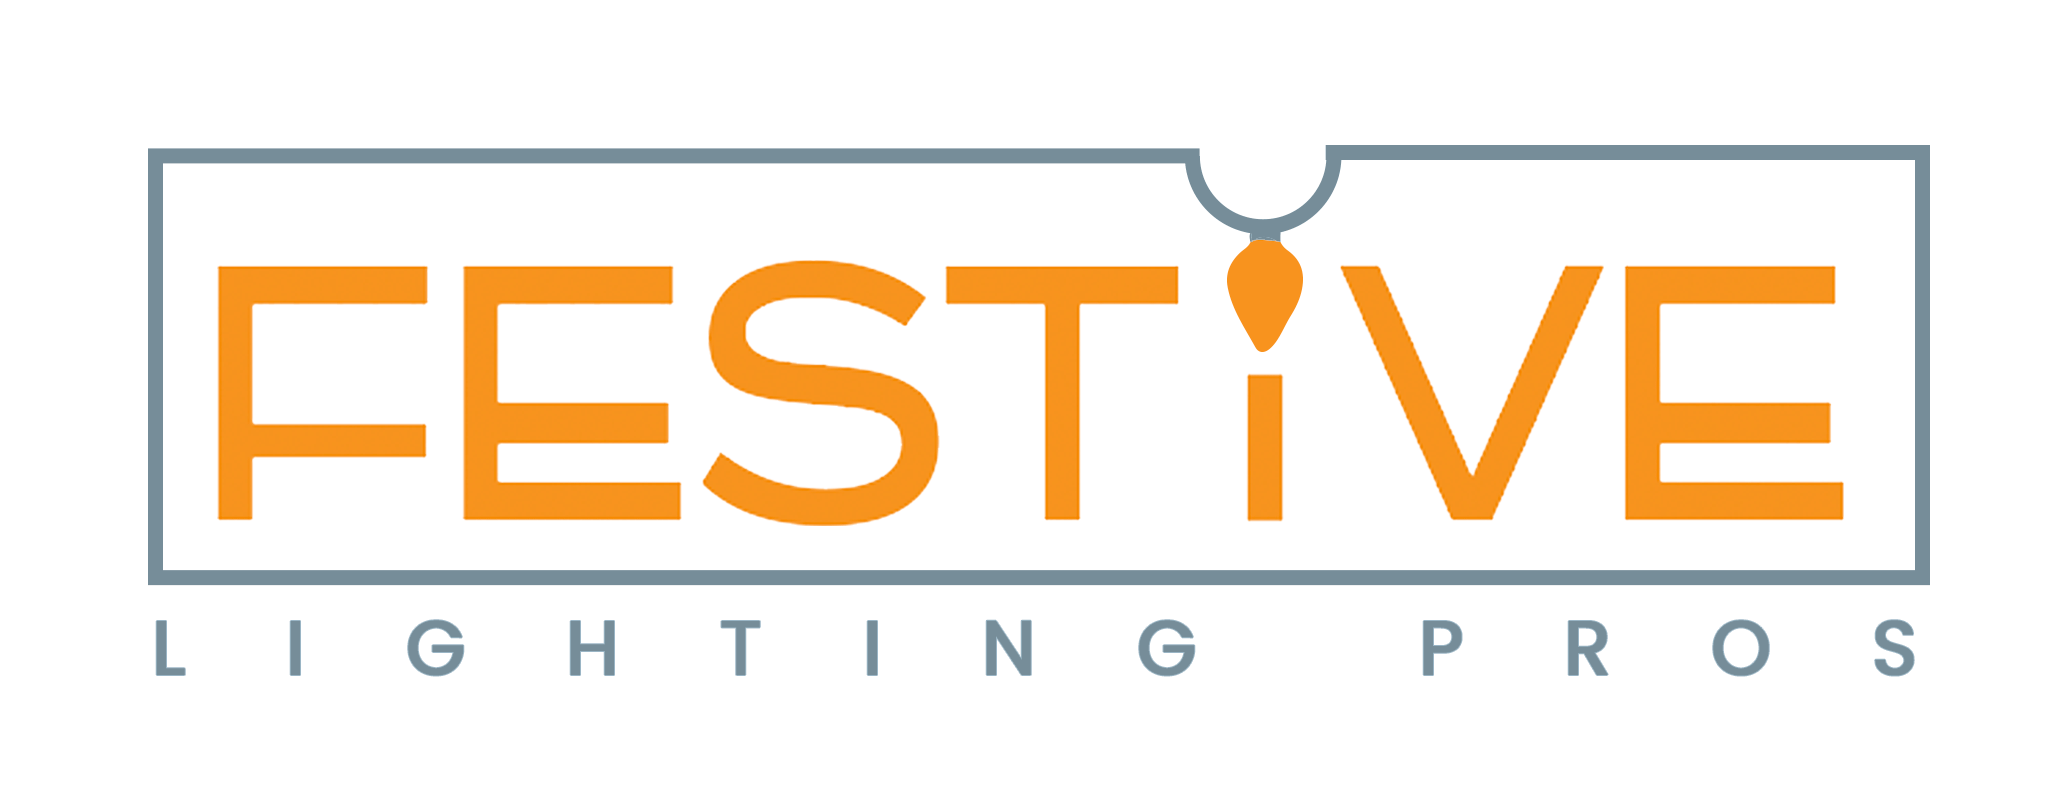 Festive Lighting Pros Logo